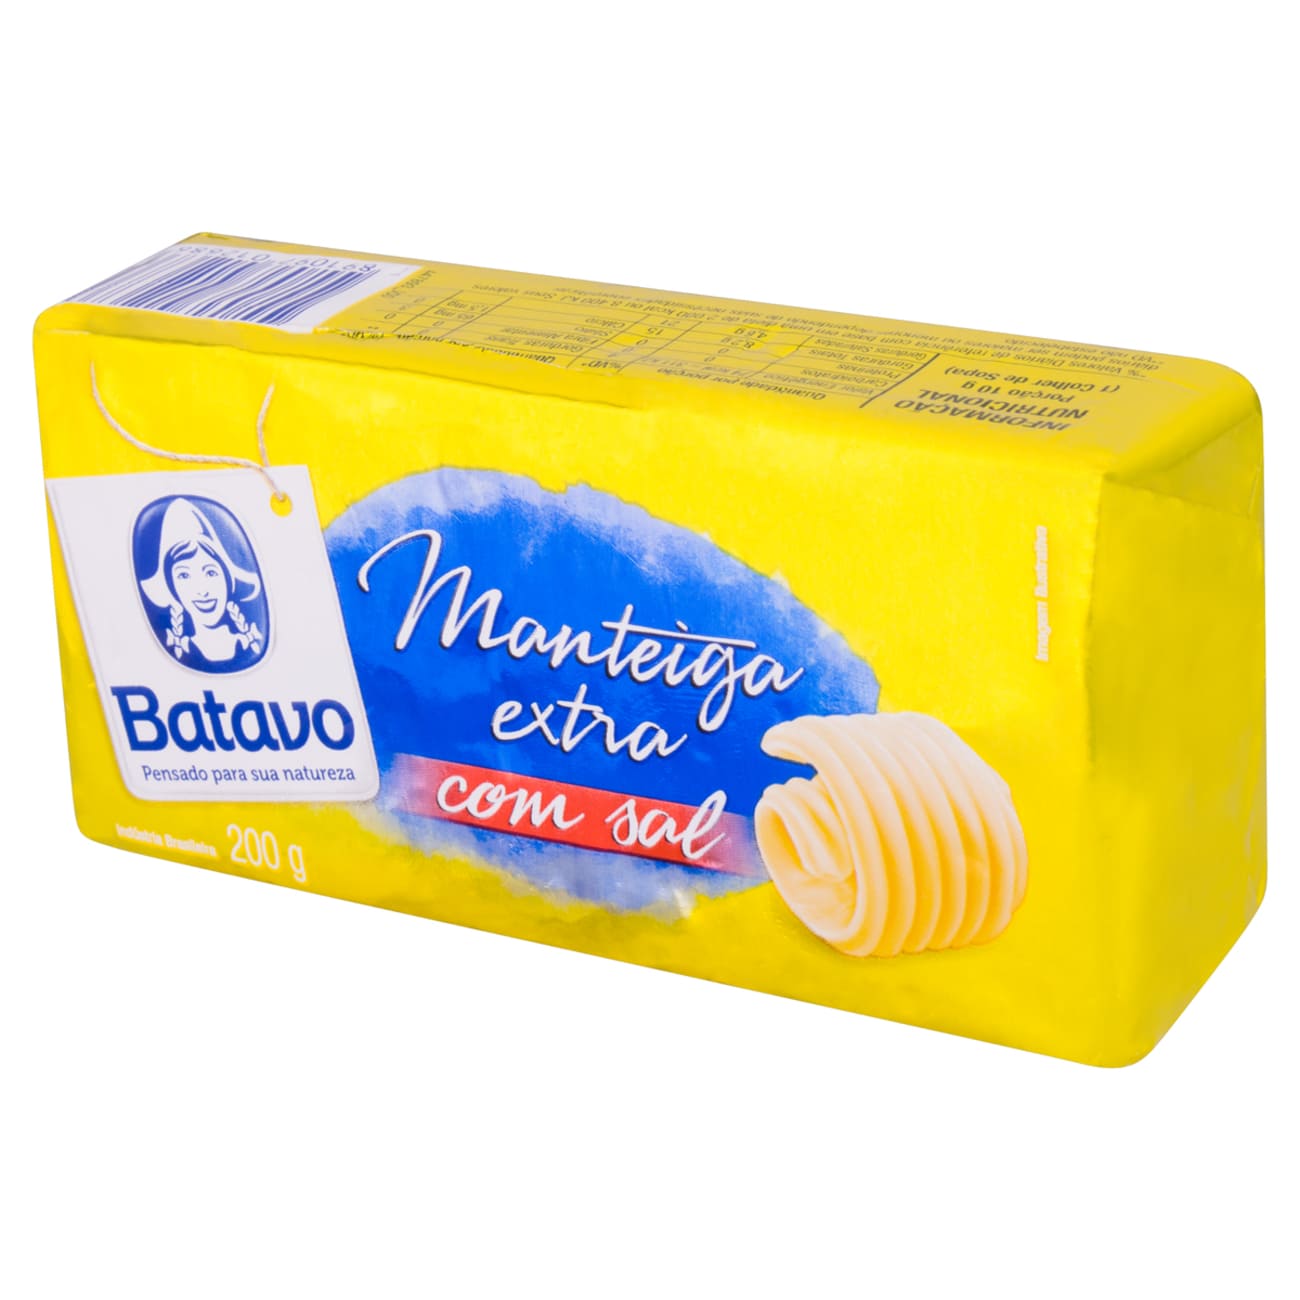 Manteiga Extra com Sal Batavo 200g